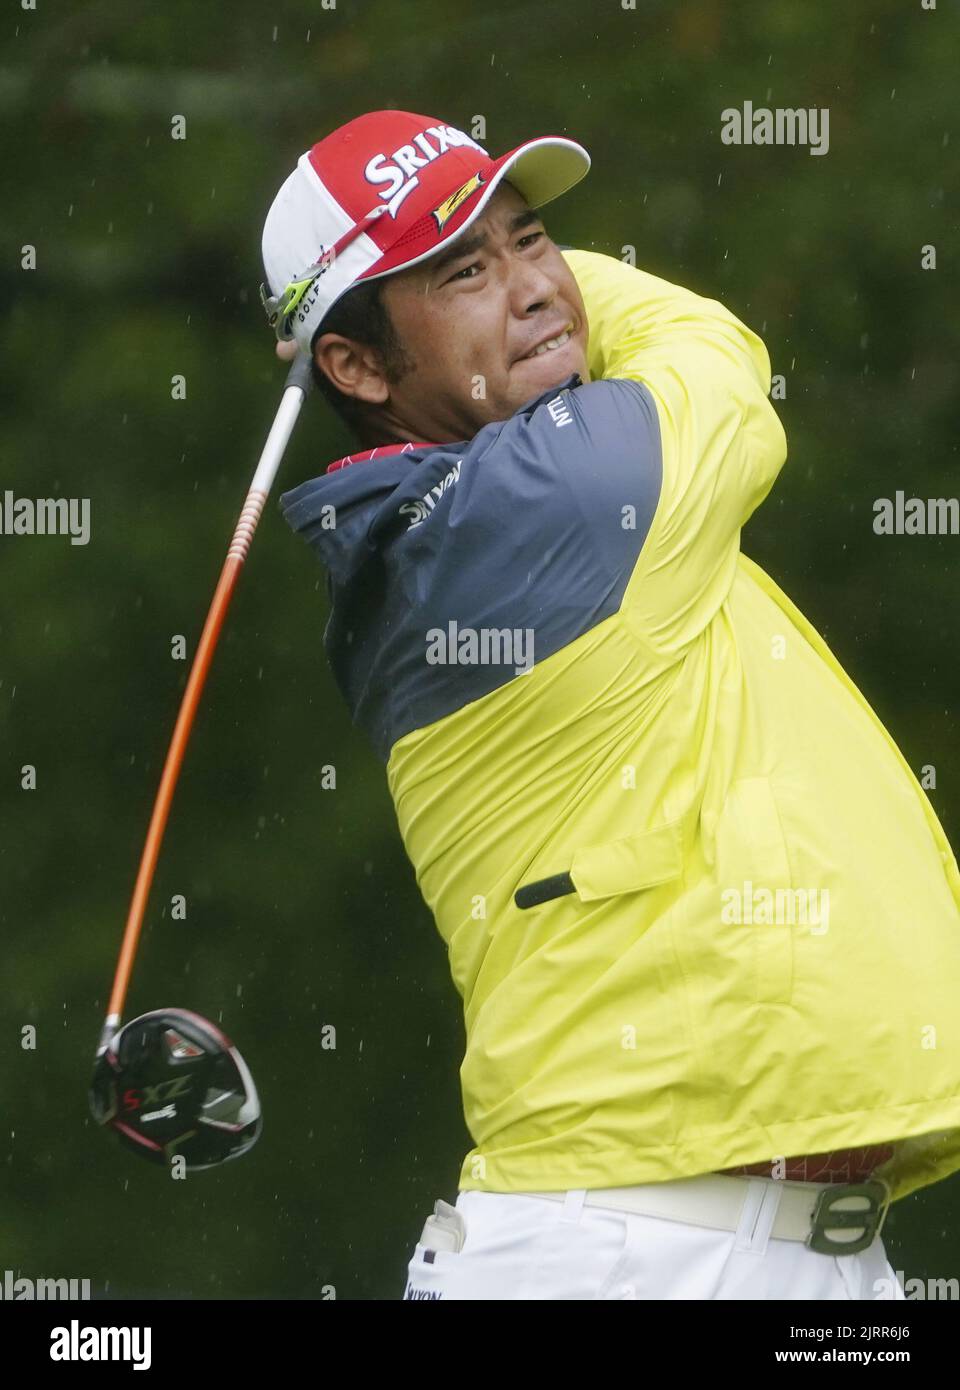 Hideki Matsuyama de Japón golpea el quinto tee durante la primera ronda del Tour Championship en East Lake Golf Club en Atlanta, Georgia, el 25 de agosto de 2022. (Kyodo)==Foto de Kyodo vía crédito: Noticias en vivo de Newscom/Alamy Foto de stock